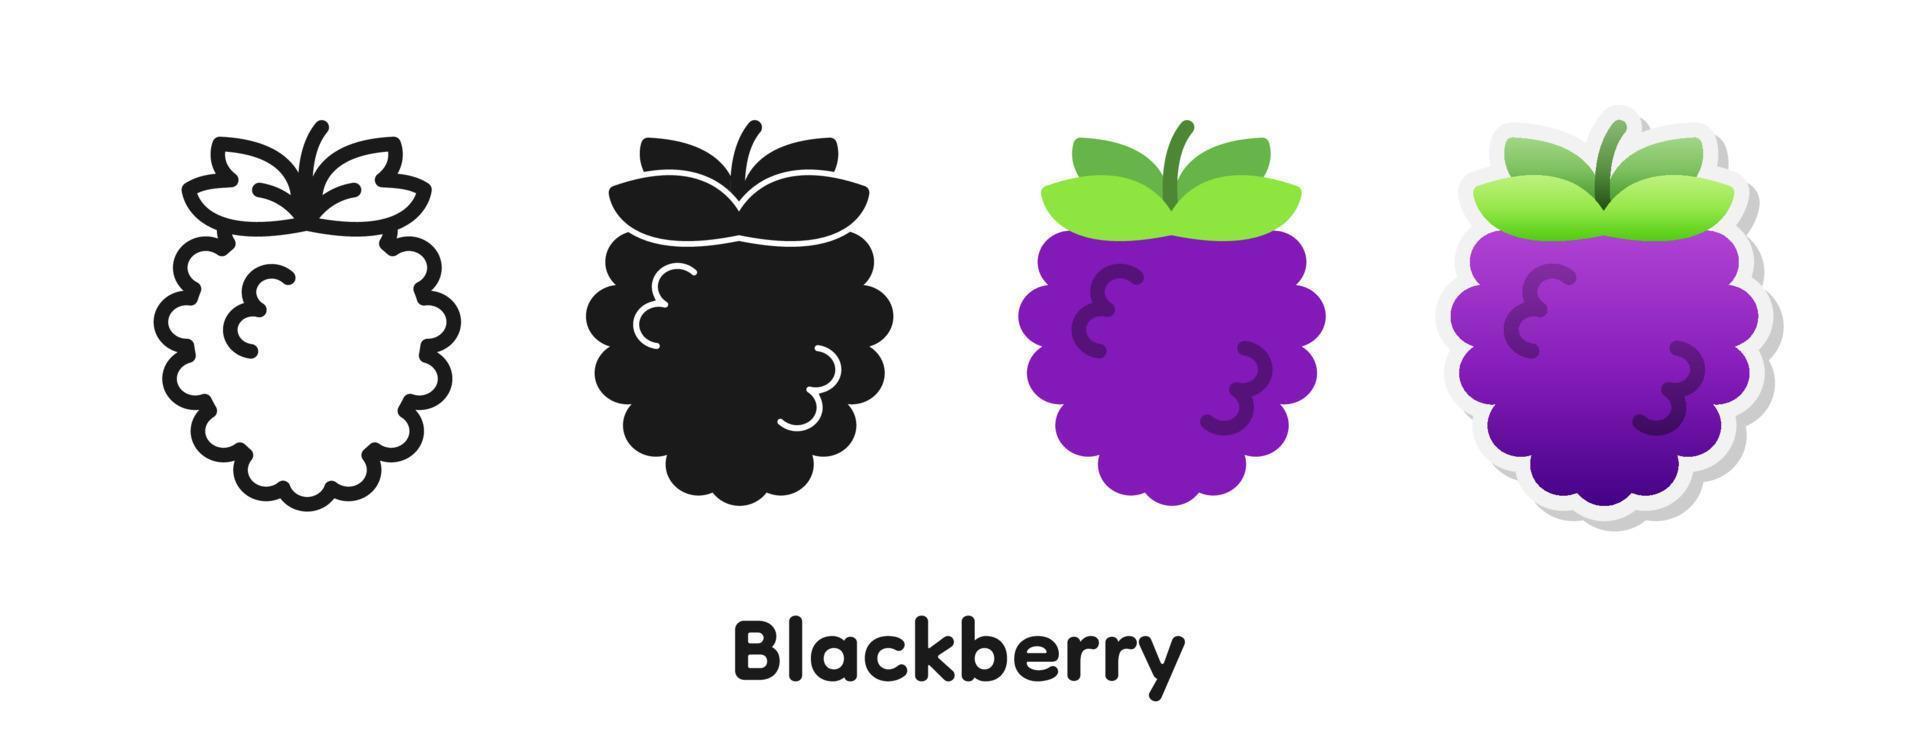 Vector icon set of Blackberry.